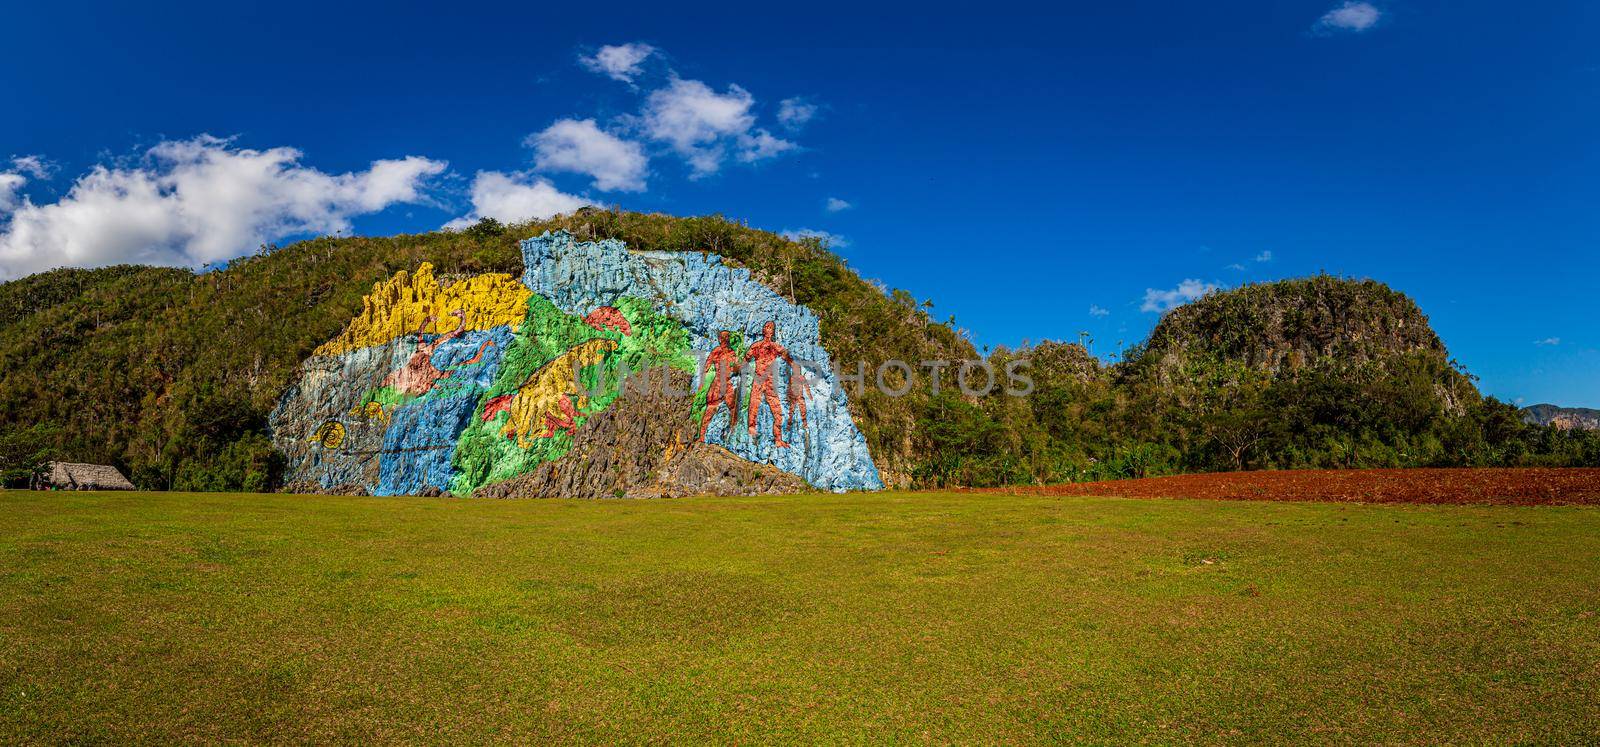 Mural de la Prehistoria Cuba by gepeng